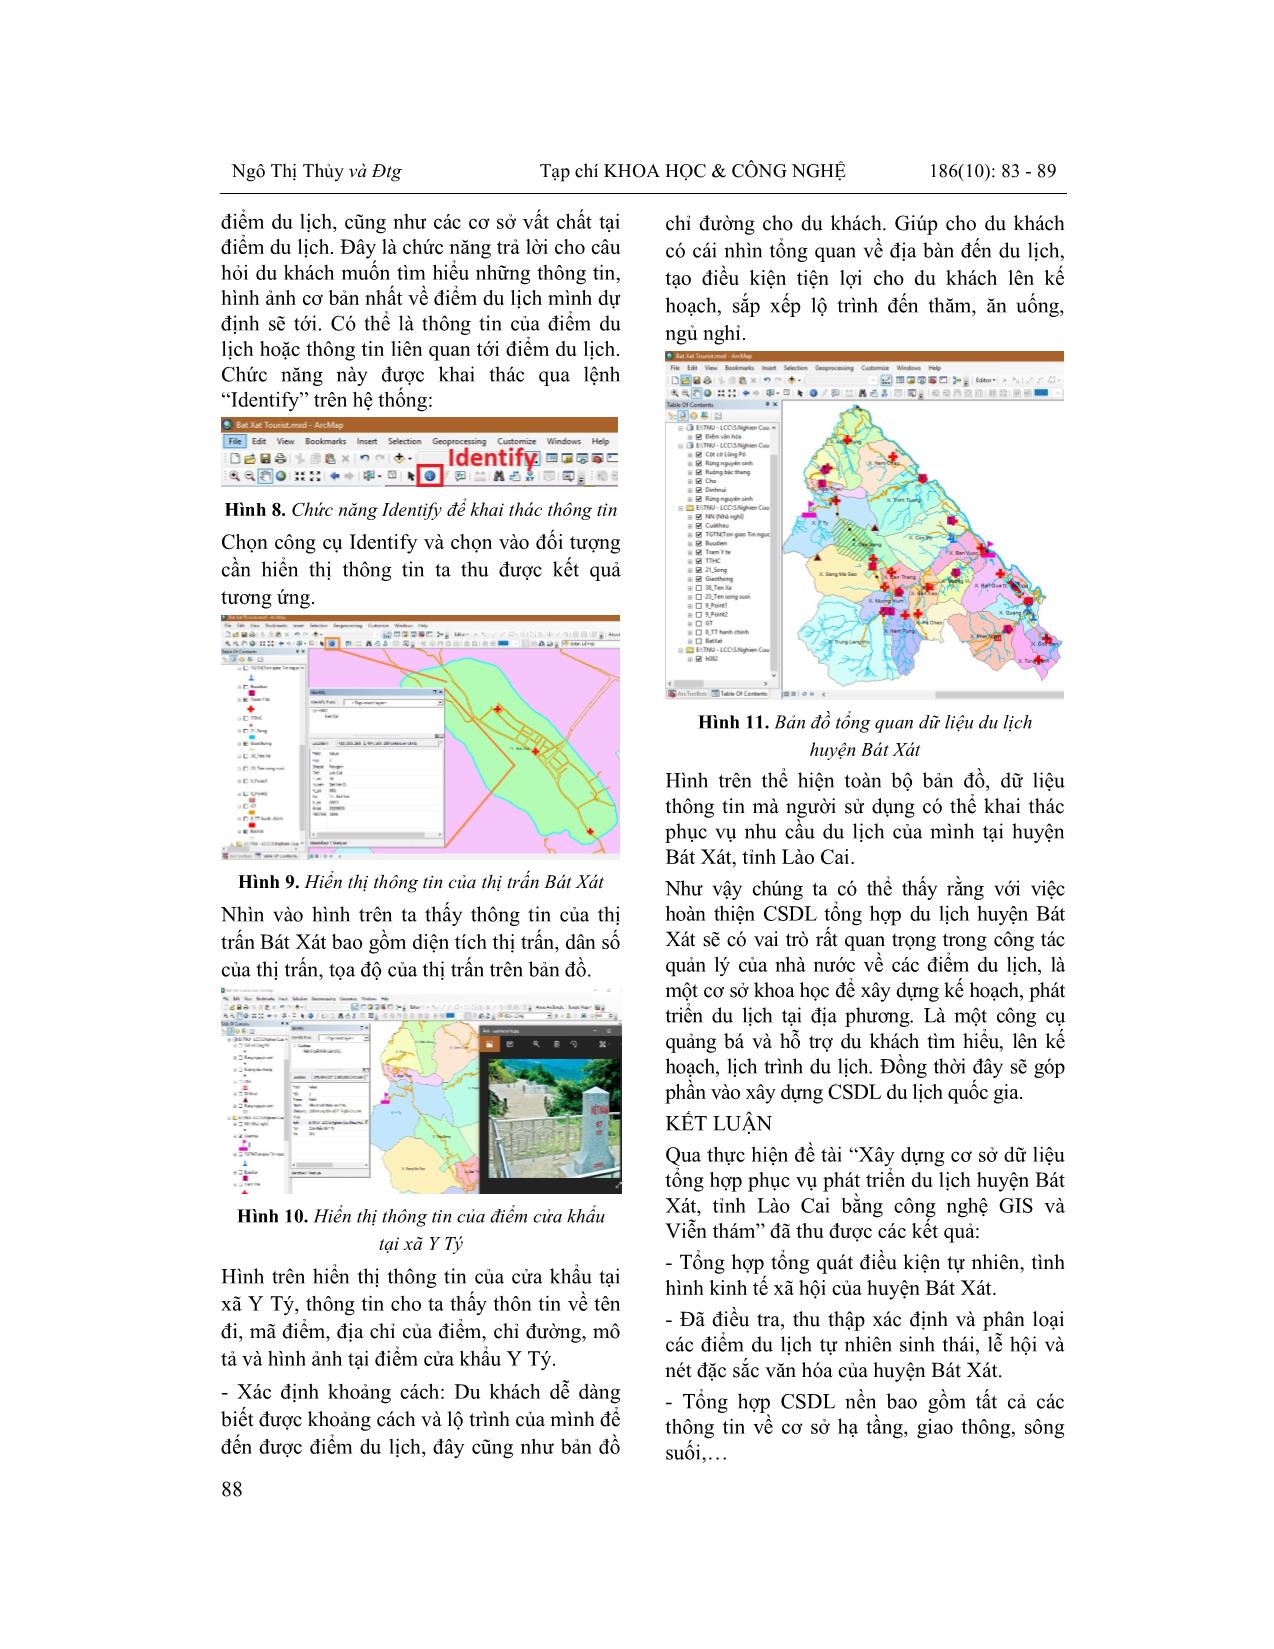 Xây dựng cơ sở dữ liệu tổng hợp phục vụ phát triển du lịch huyện Bát xát, tỉnh Lào Cai bằng công nghệ gis và viễn thám trang 6